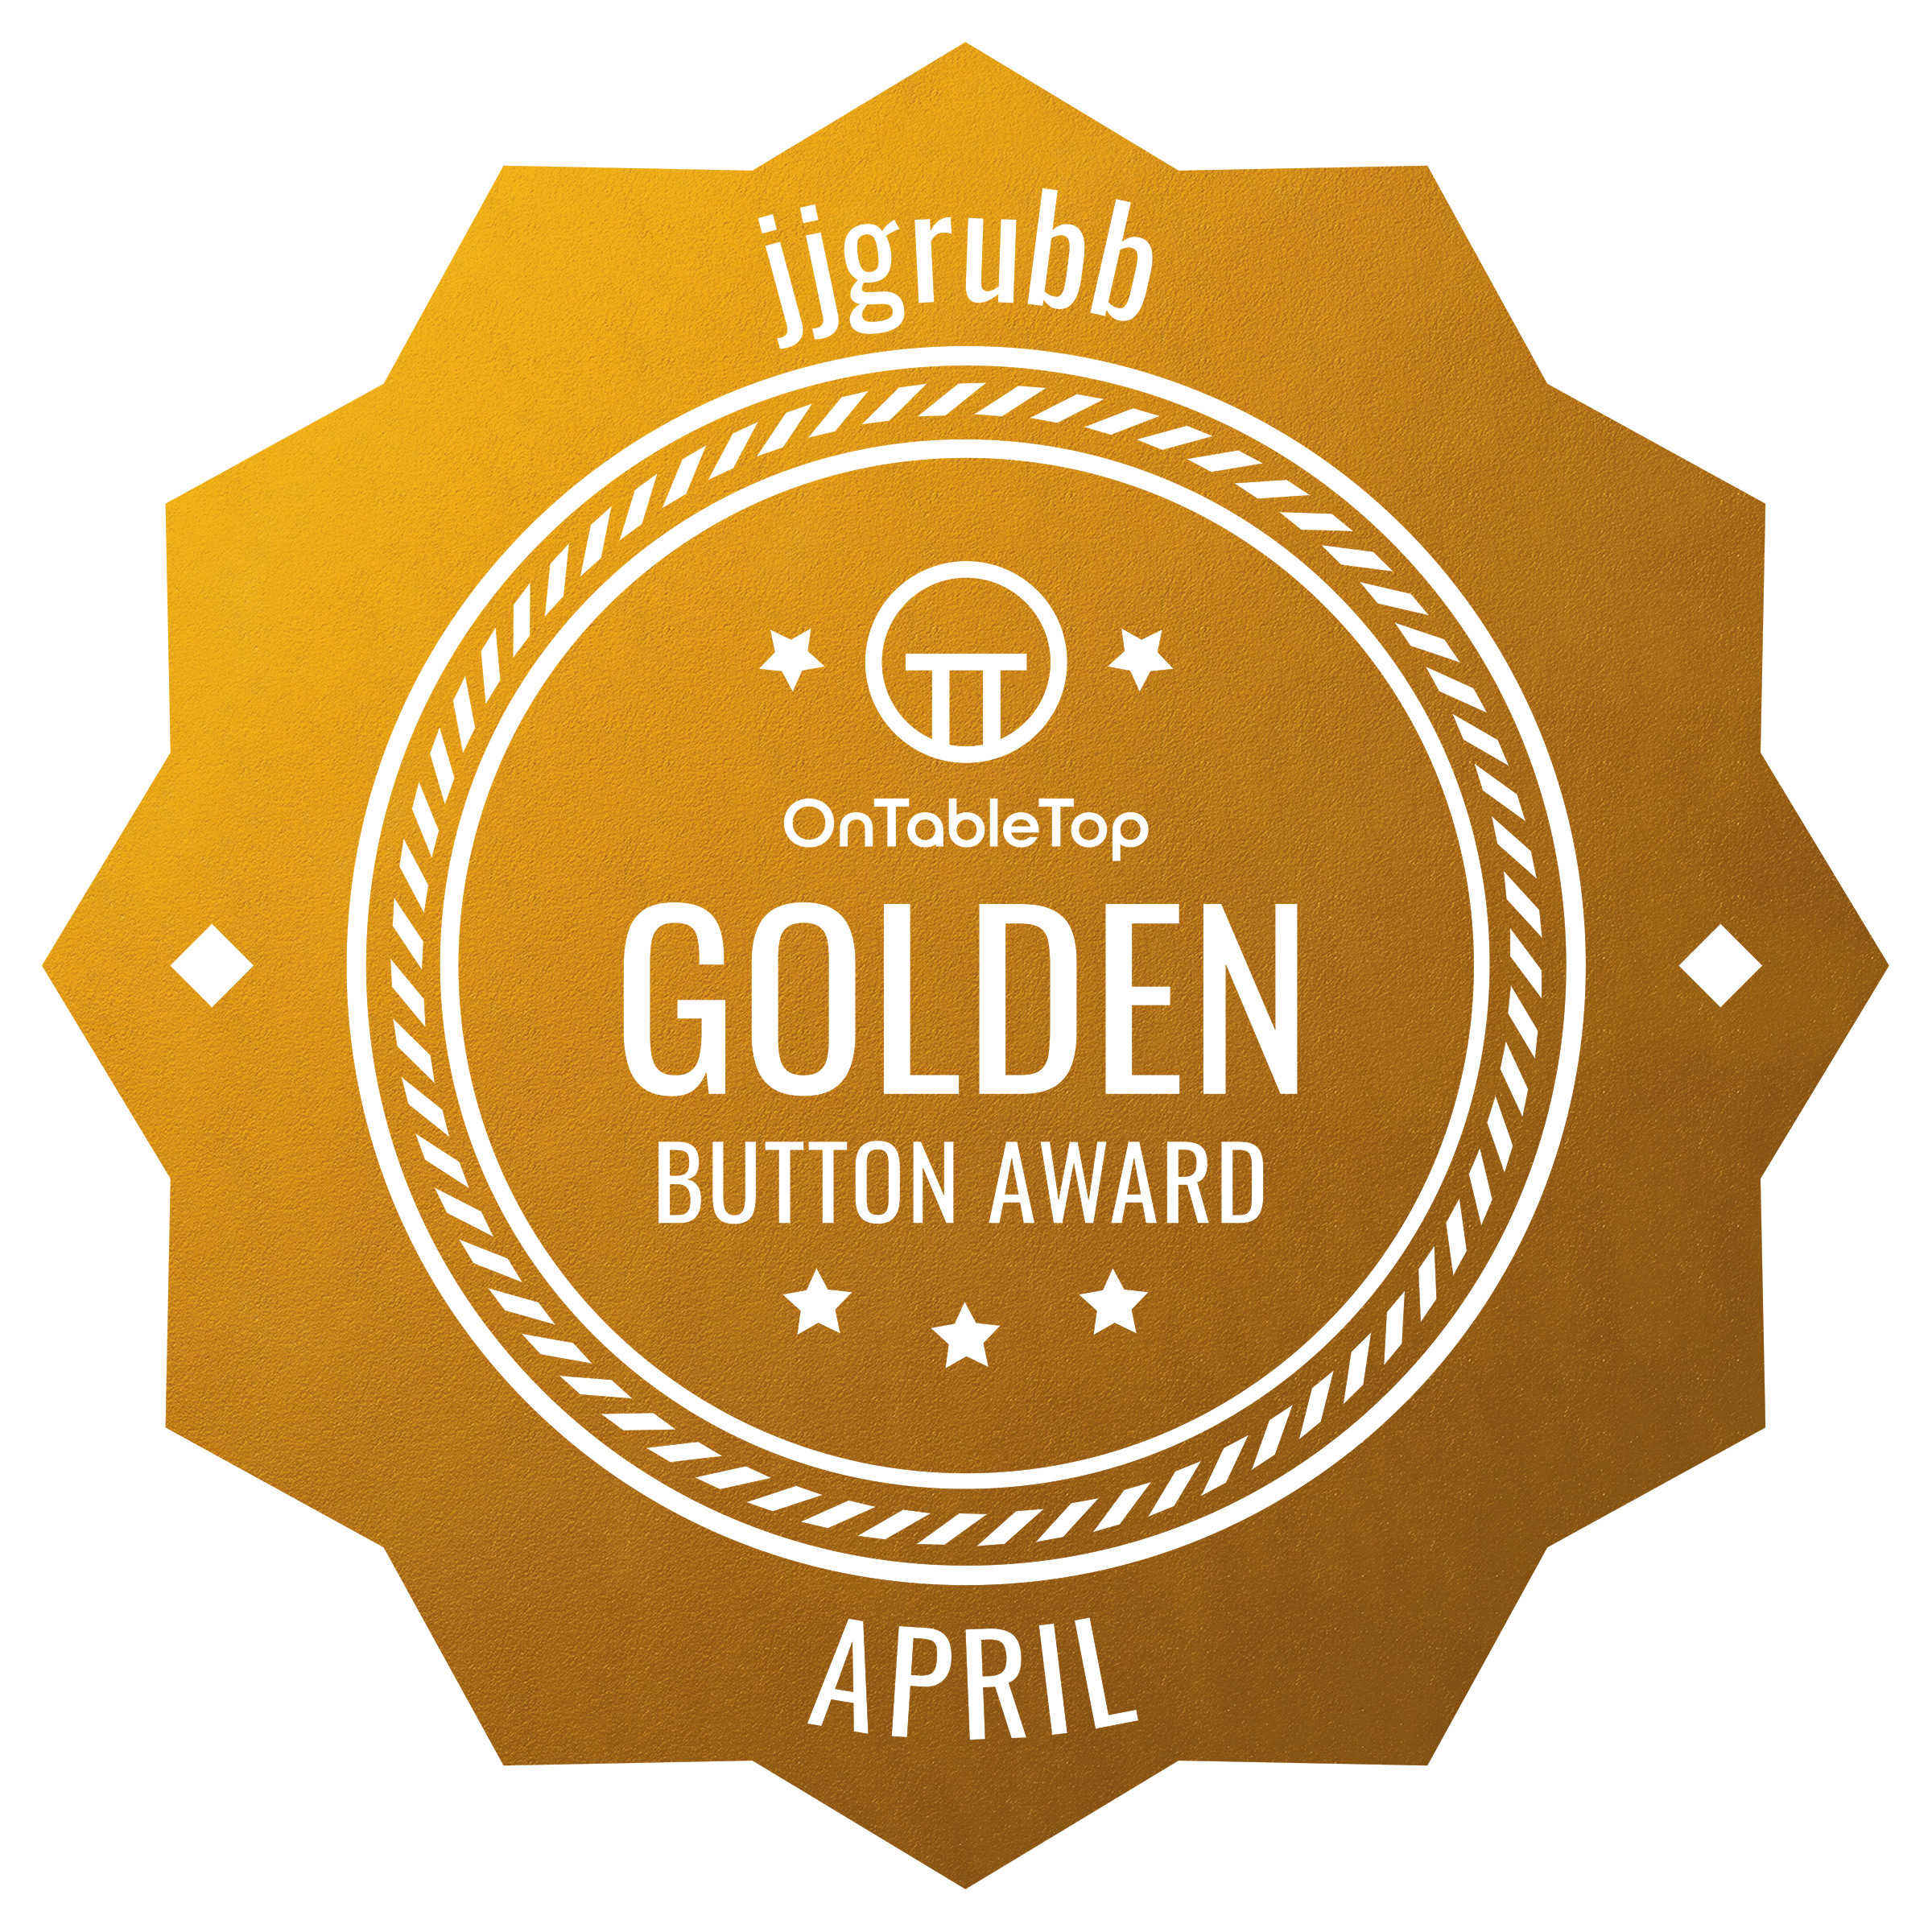 jjgrubb - Gold Button